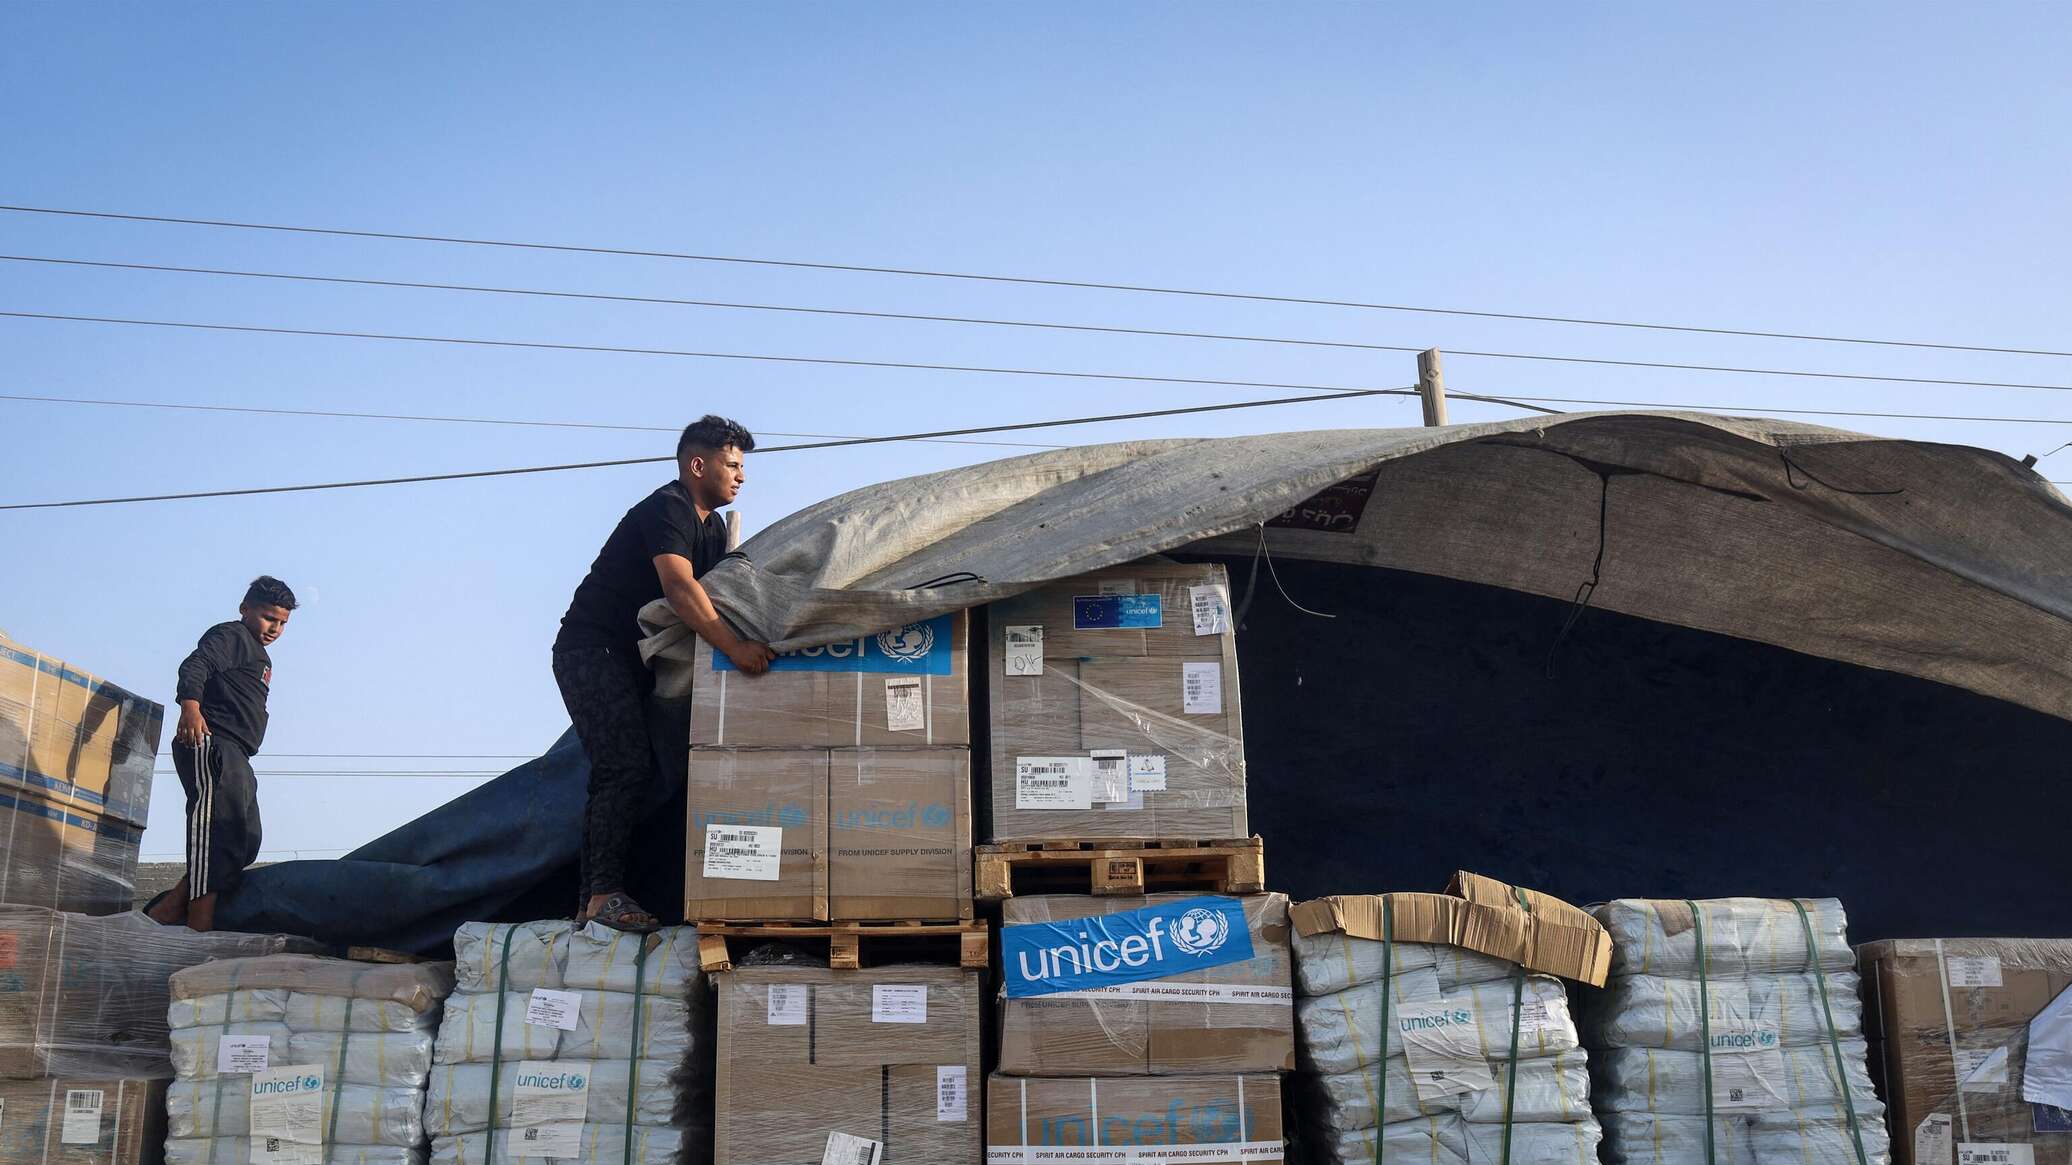 الولايات المتحدة تسقط جوا 38 ألف وجبة غذائية فوق غزة... فيديو وصور